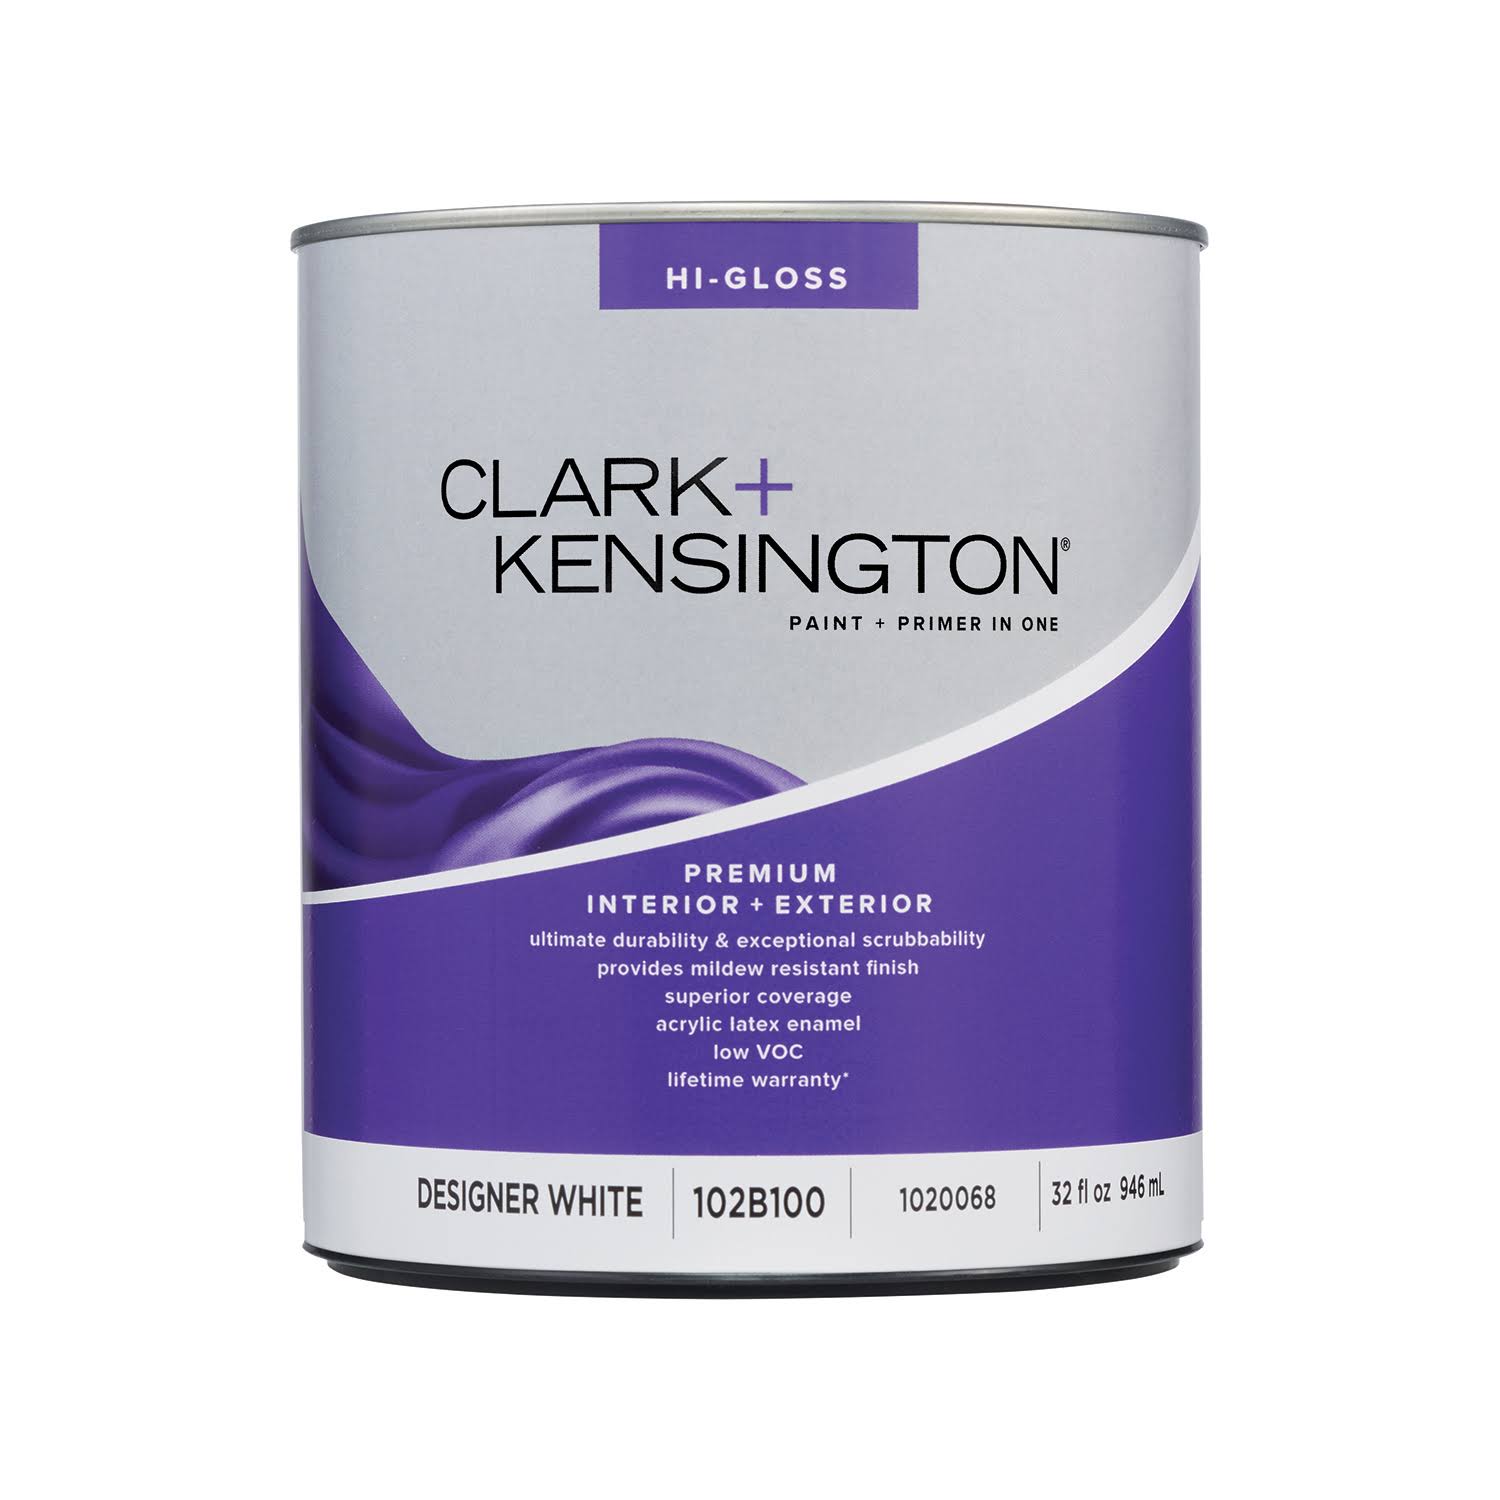 Clark+kensington Hi-Gloss Designer White Premium Paint Exterior and Interior 1 qt.